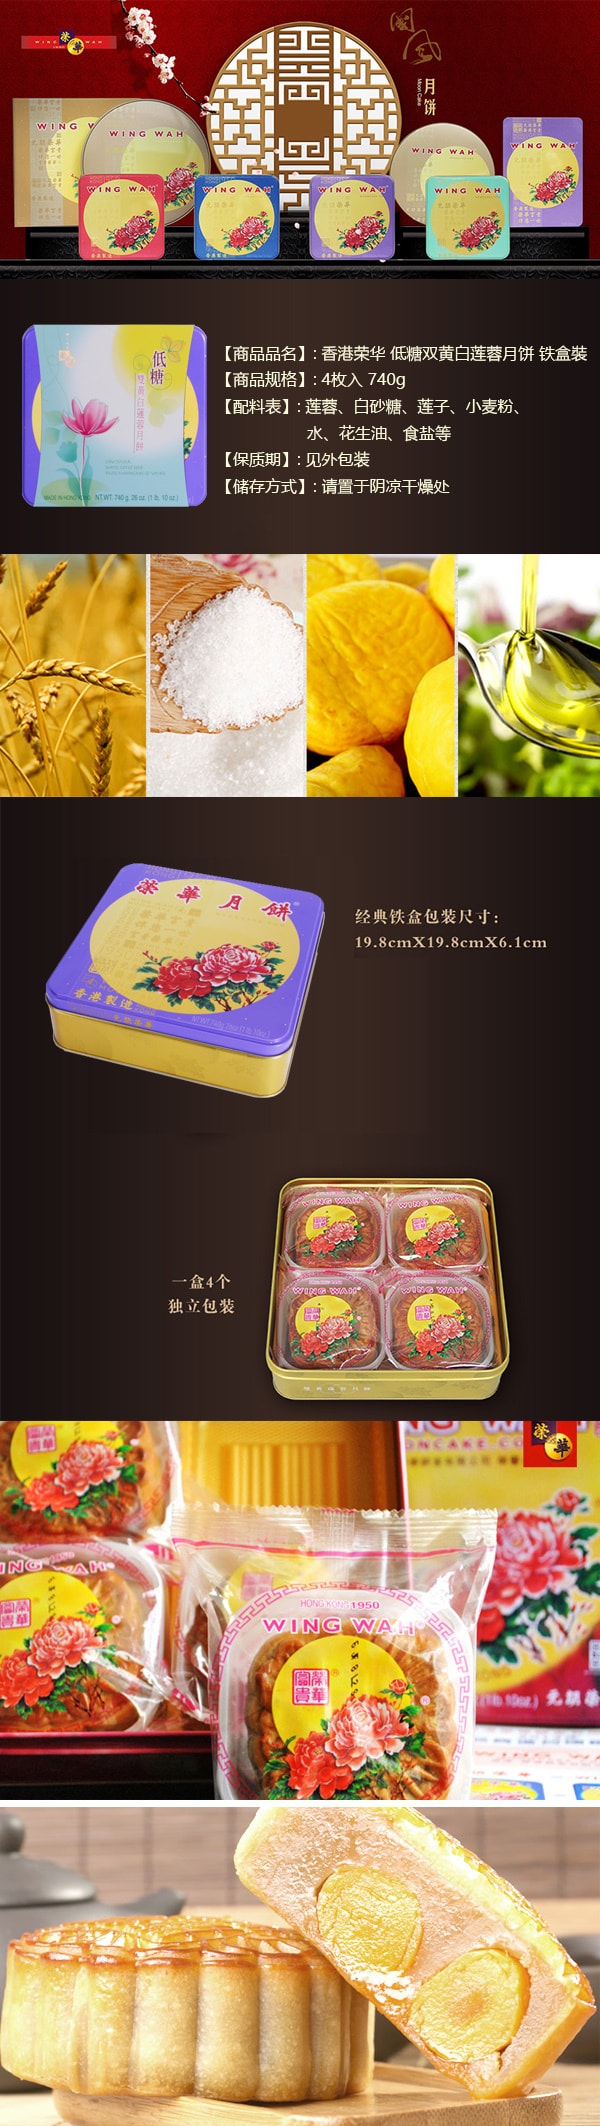 【全美最低价】香港荣华 低糖双黄白莲蓉月饼 铁盒装 4枚入 740g 【发货时间：8月底】